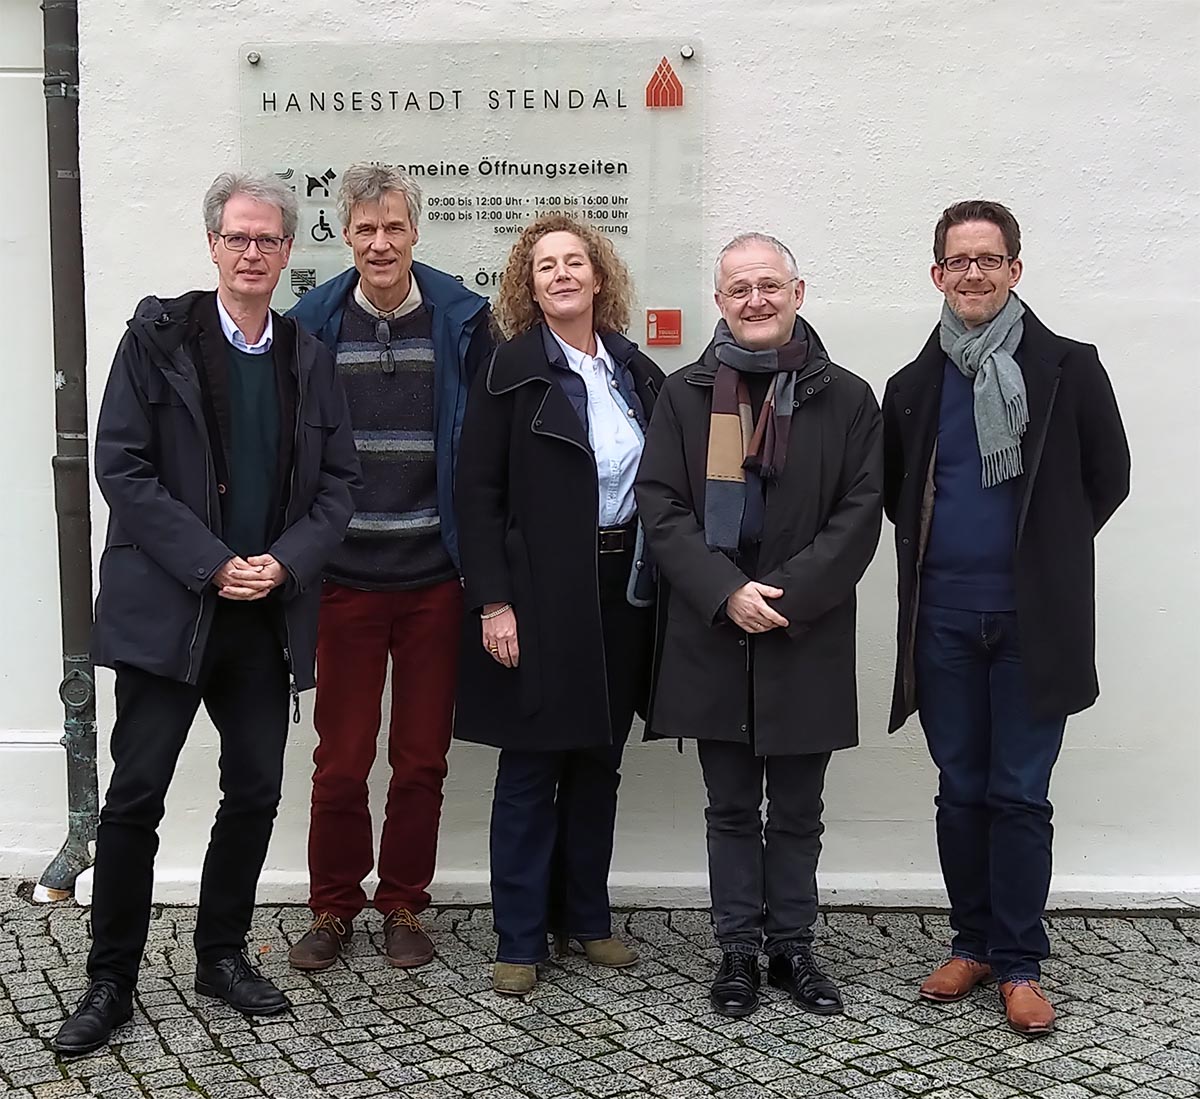 Das Bild zeigt die Mitglieder der Jury vor dem Eingang des Rathauses Stendal. V.l.n.r.: Prof. Thomas Müller-Pering, Prof. Stephan Forck, Prof. Michaela Kaune, Prof. Robert Ehrlich, Prof. Konrad Engel